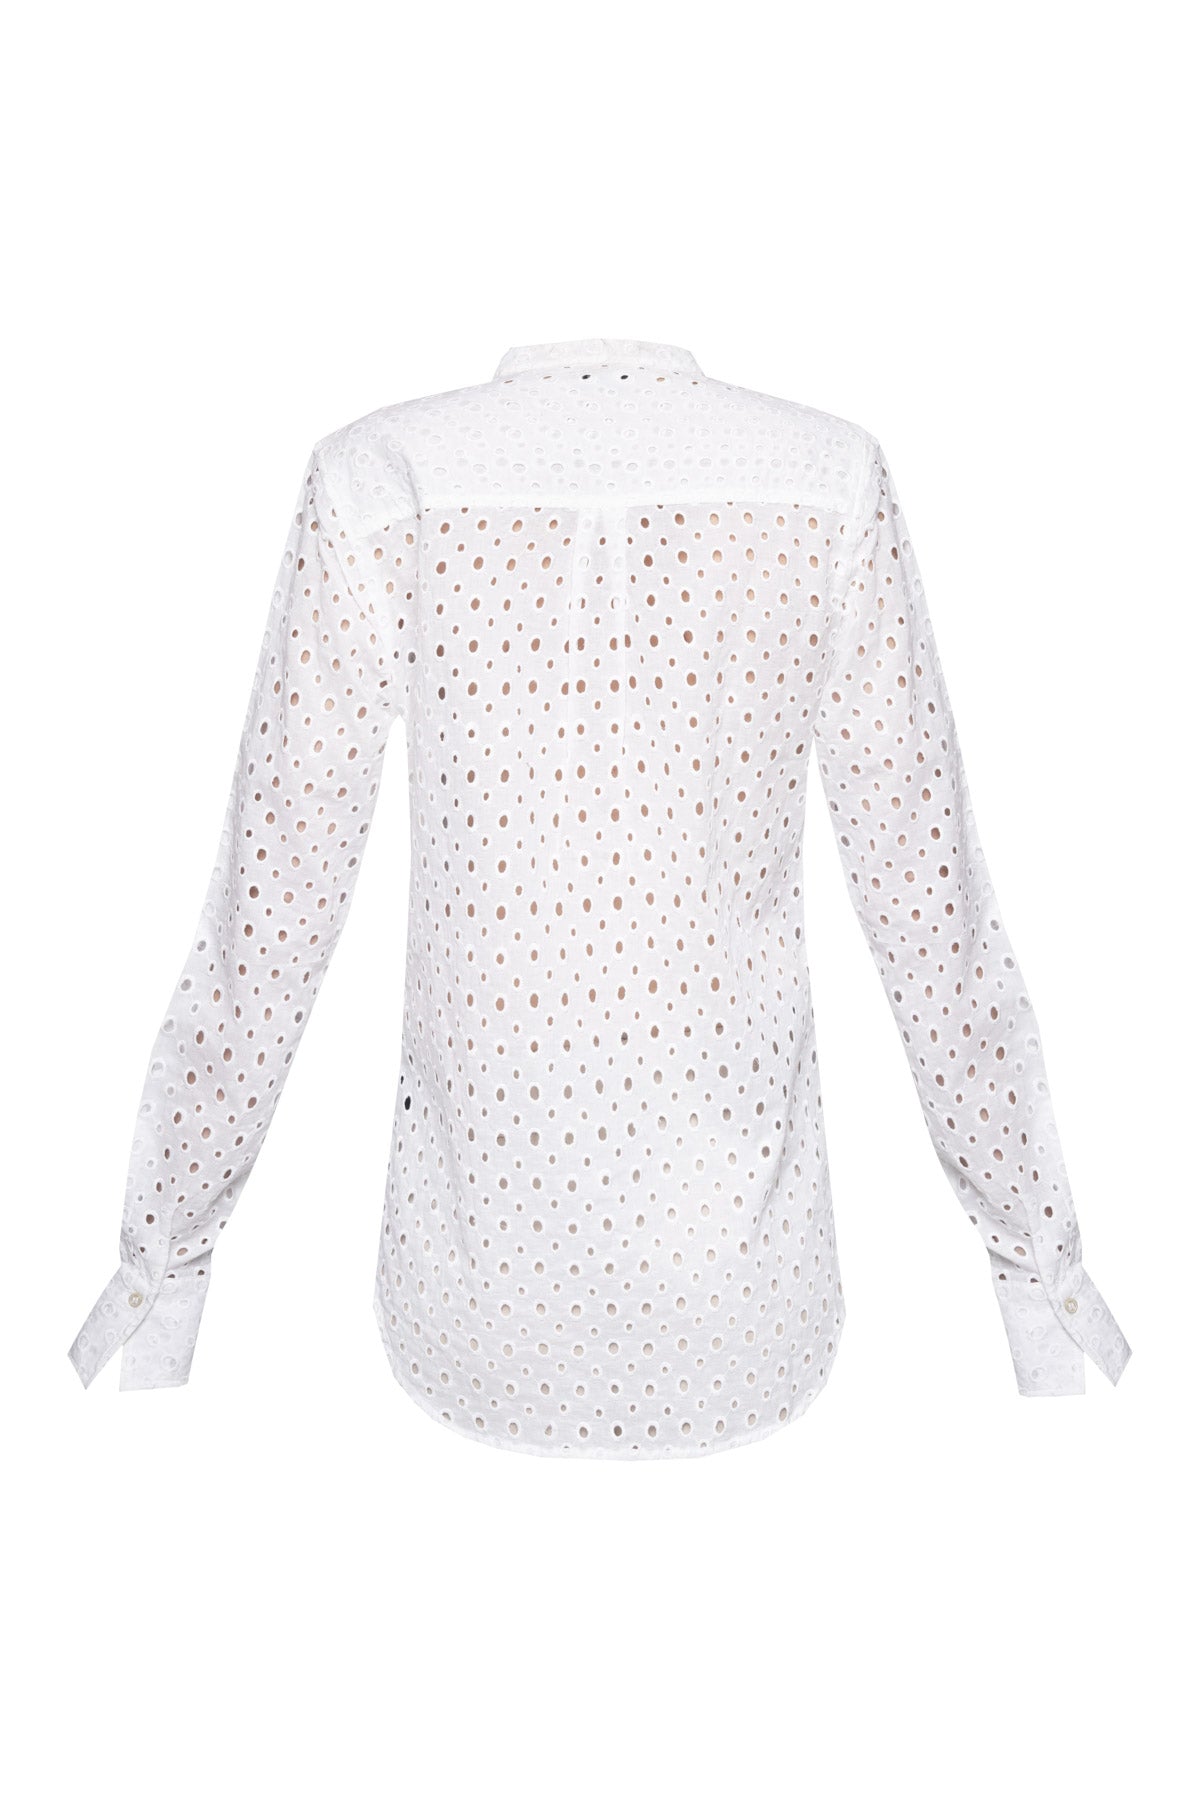 Women's Cotton Shirt - White Cut Out Circles